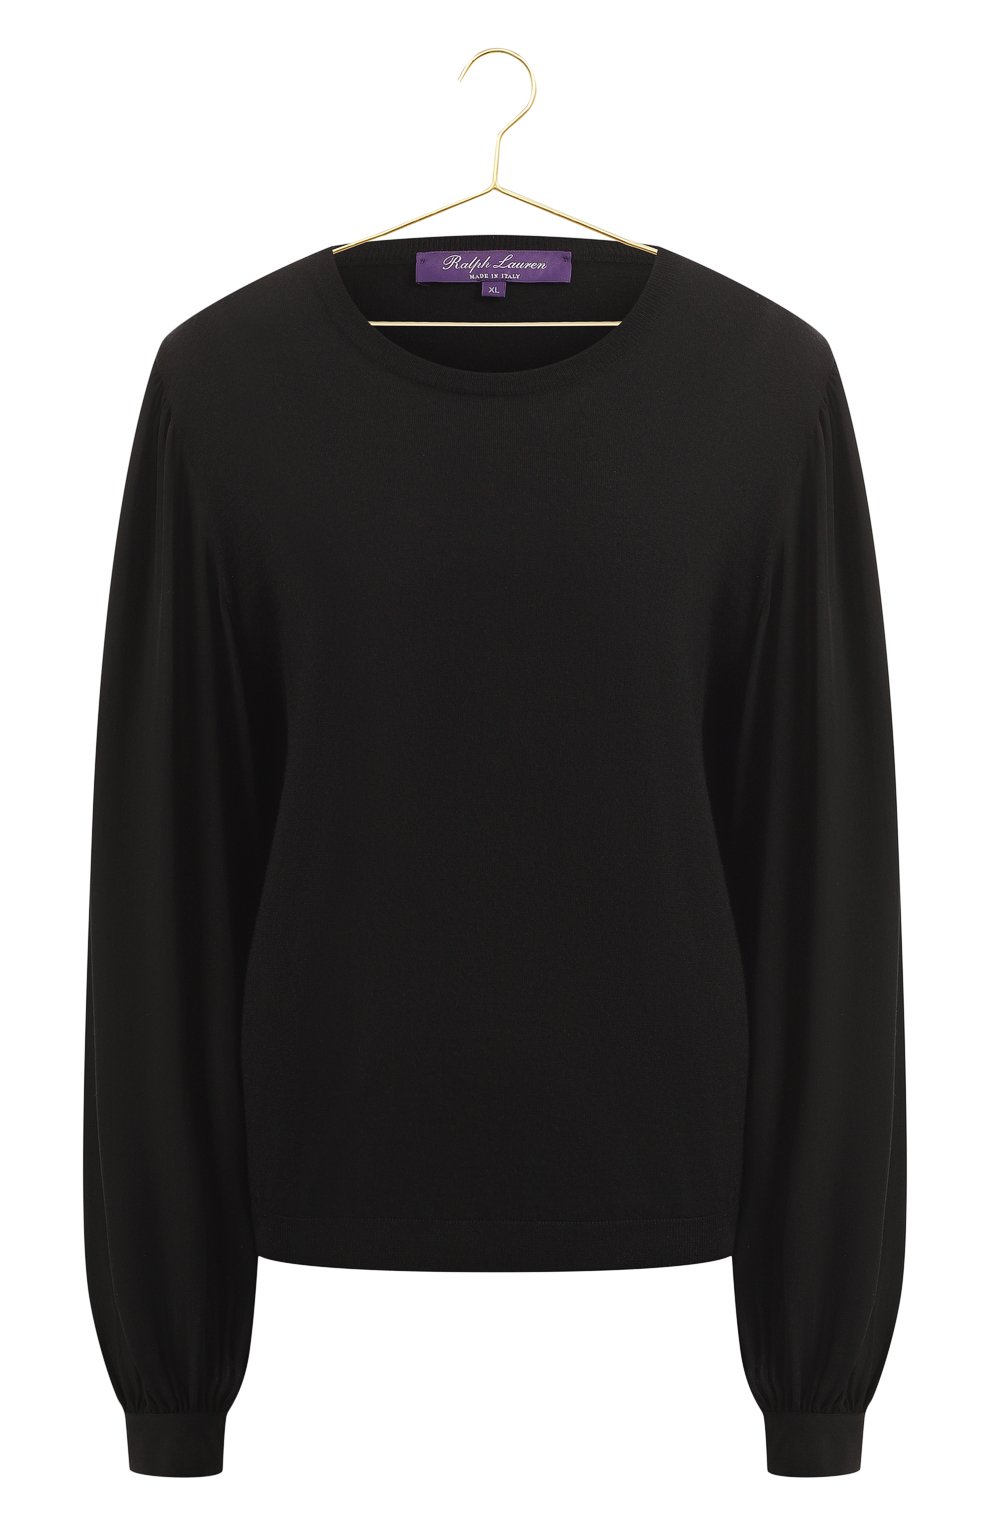 Кашемировый пуловер | Ralph Lauren | Чёрный - 1